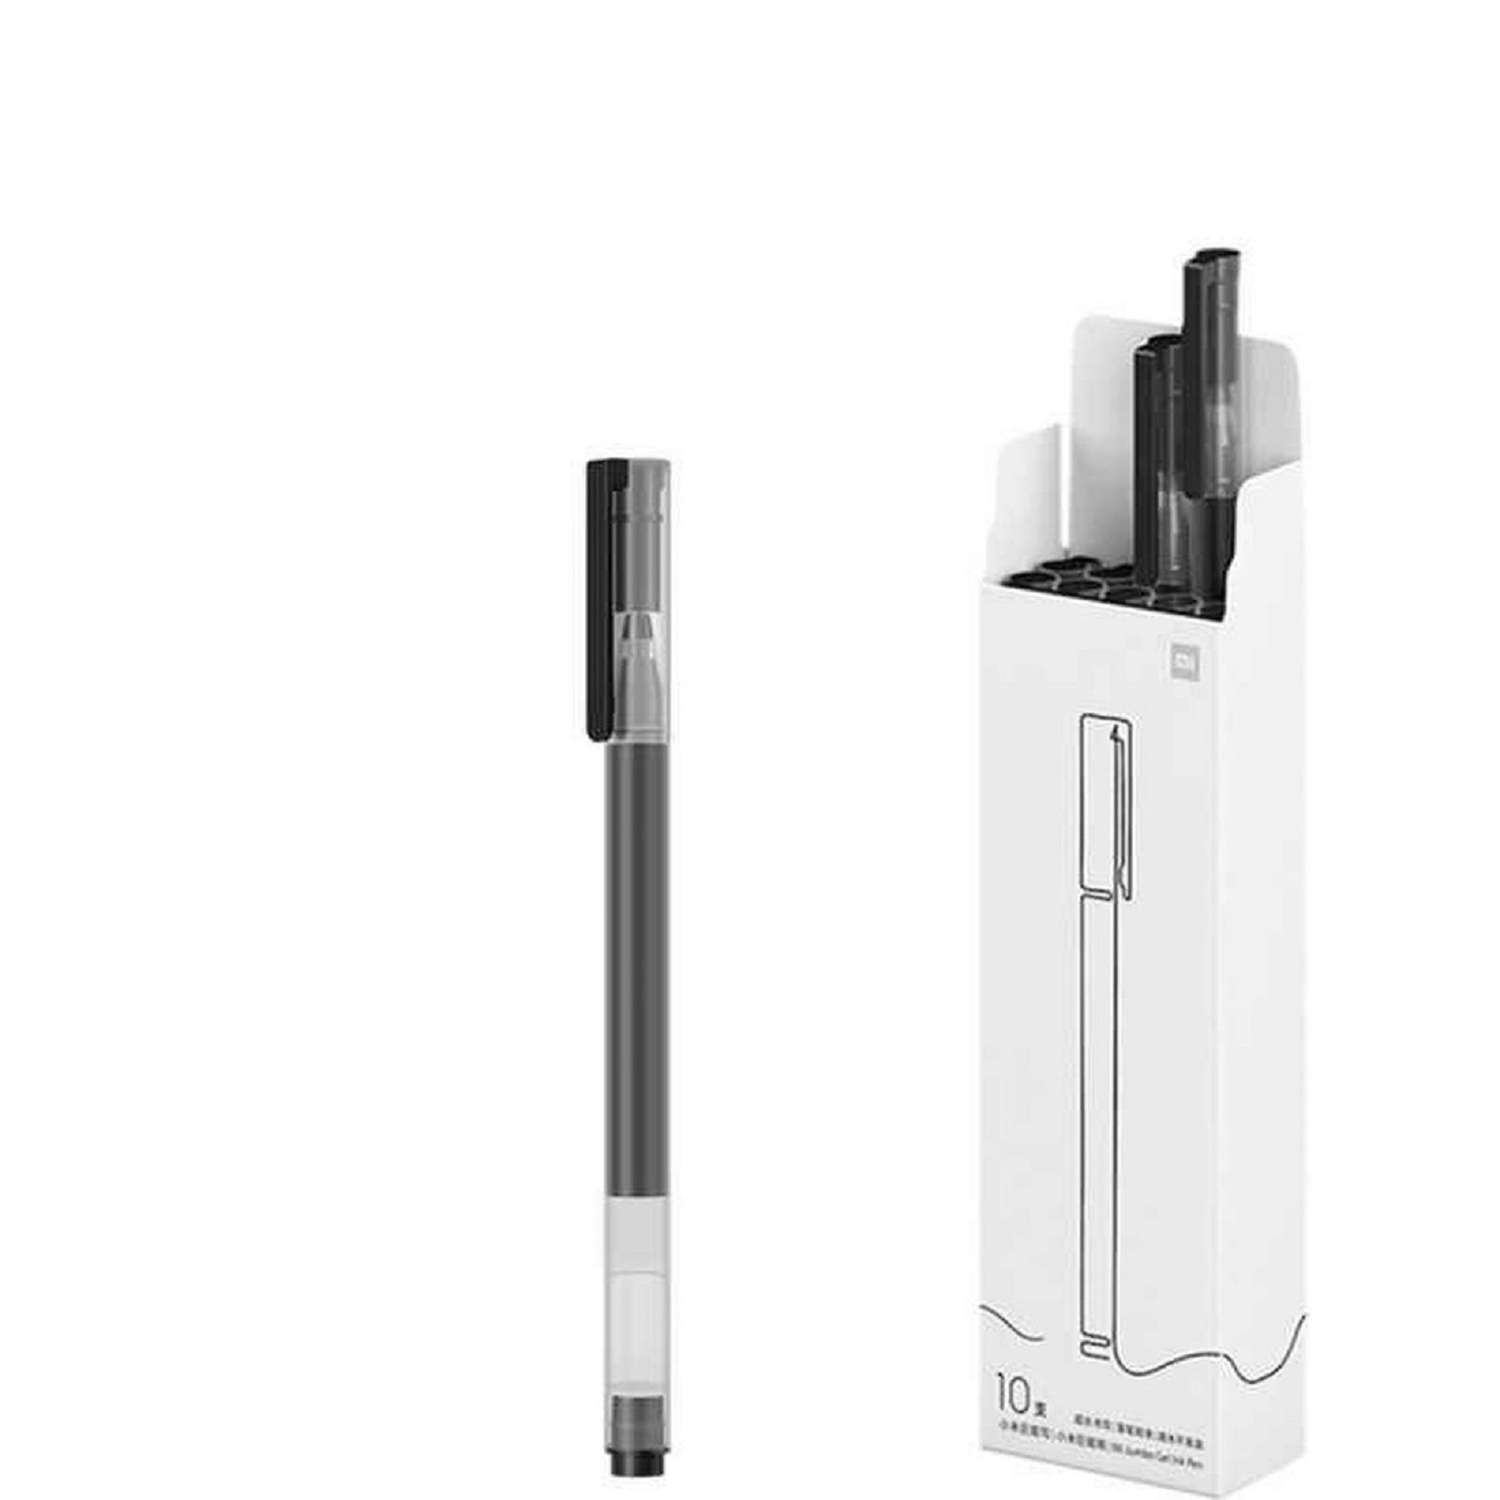 Ручка XIAOMI Mi High-capacity Gel Pen гелевая набор 10 шт - фото 2